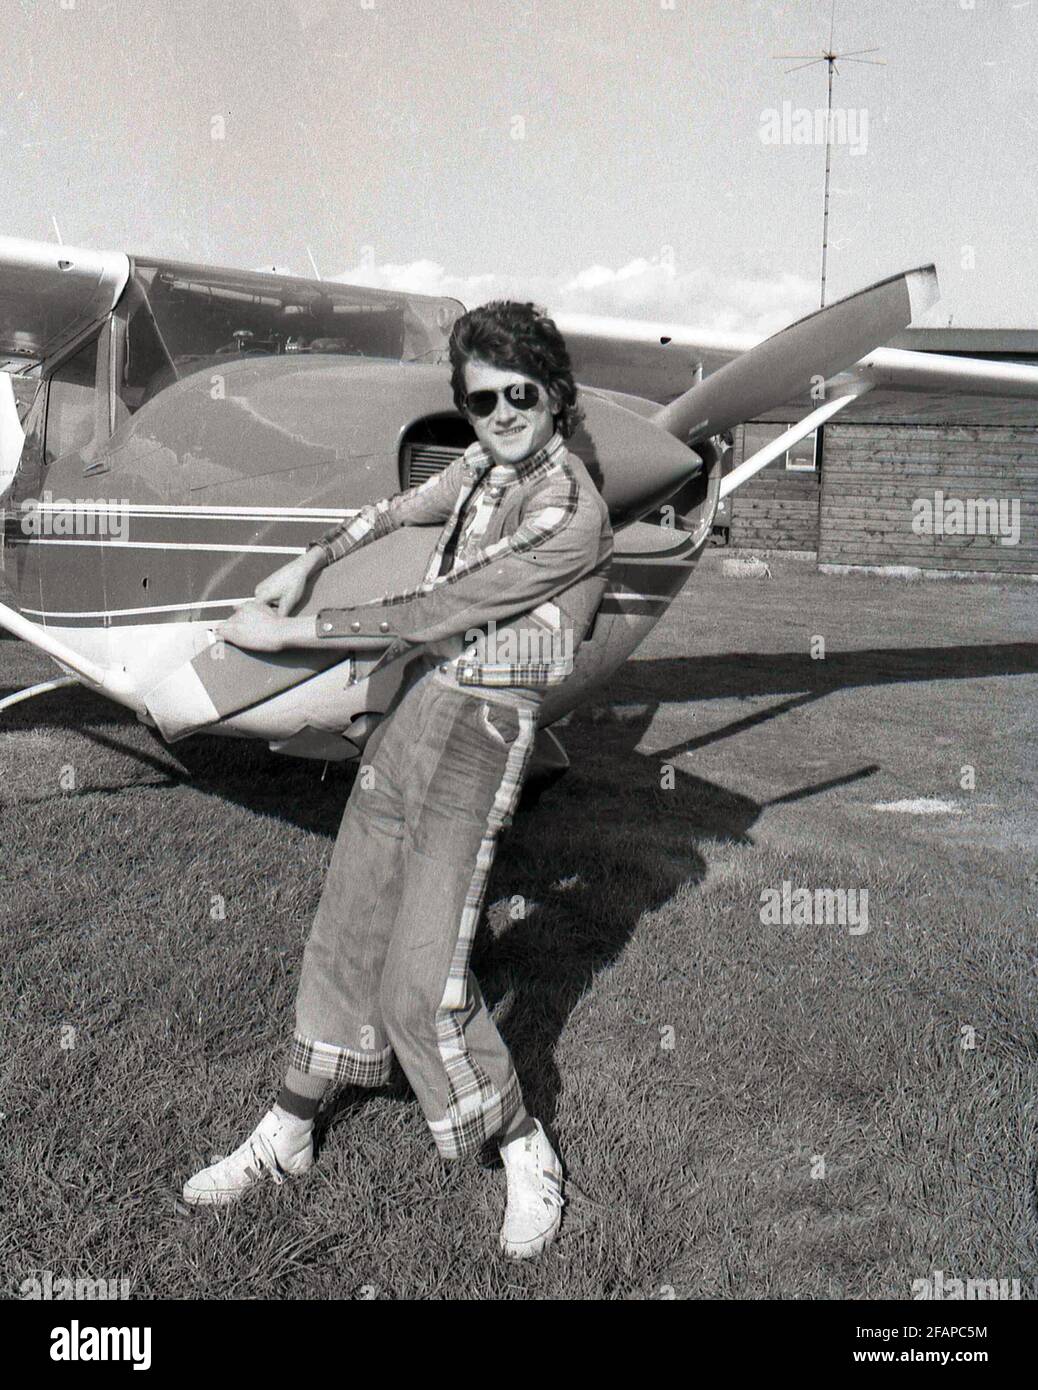 DATEI-FOTO: Der ehemalige Bay City Rollers Frontmann Les McKeown stirbt im Alter von 65 Jahren im Edinburgh Flying Club, um einen Kurs zu beginnen. Kredit: eric mccowat/Alamy Live Nachrichten Stockfoto